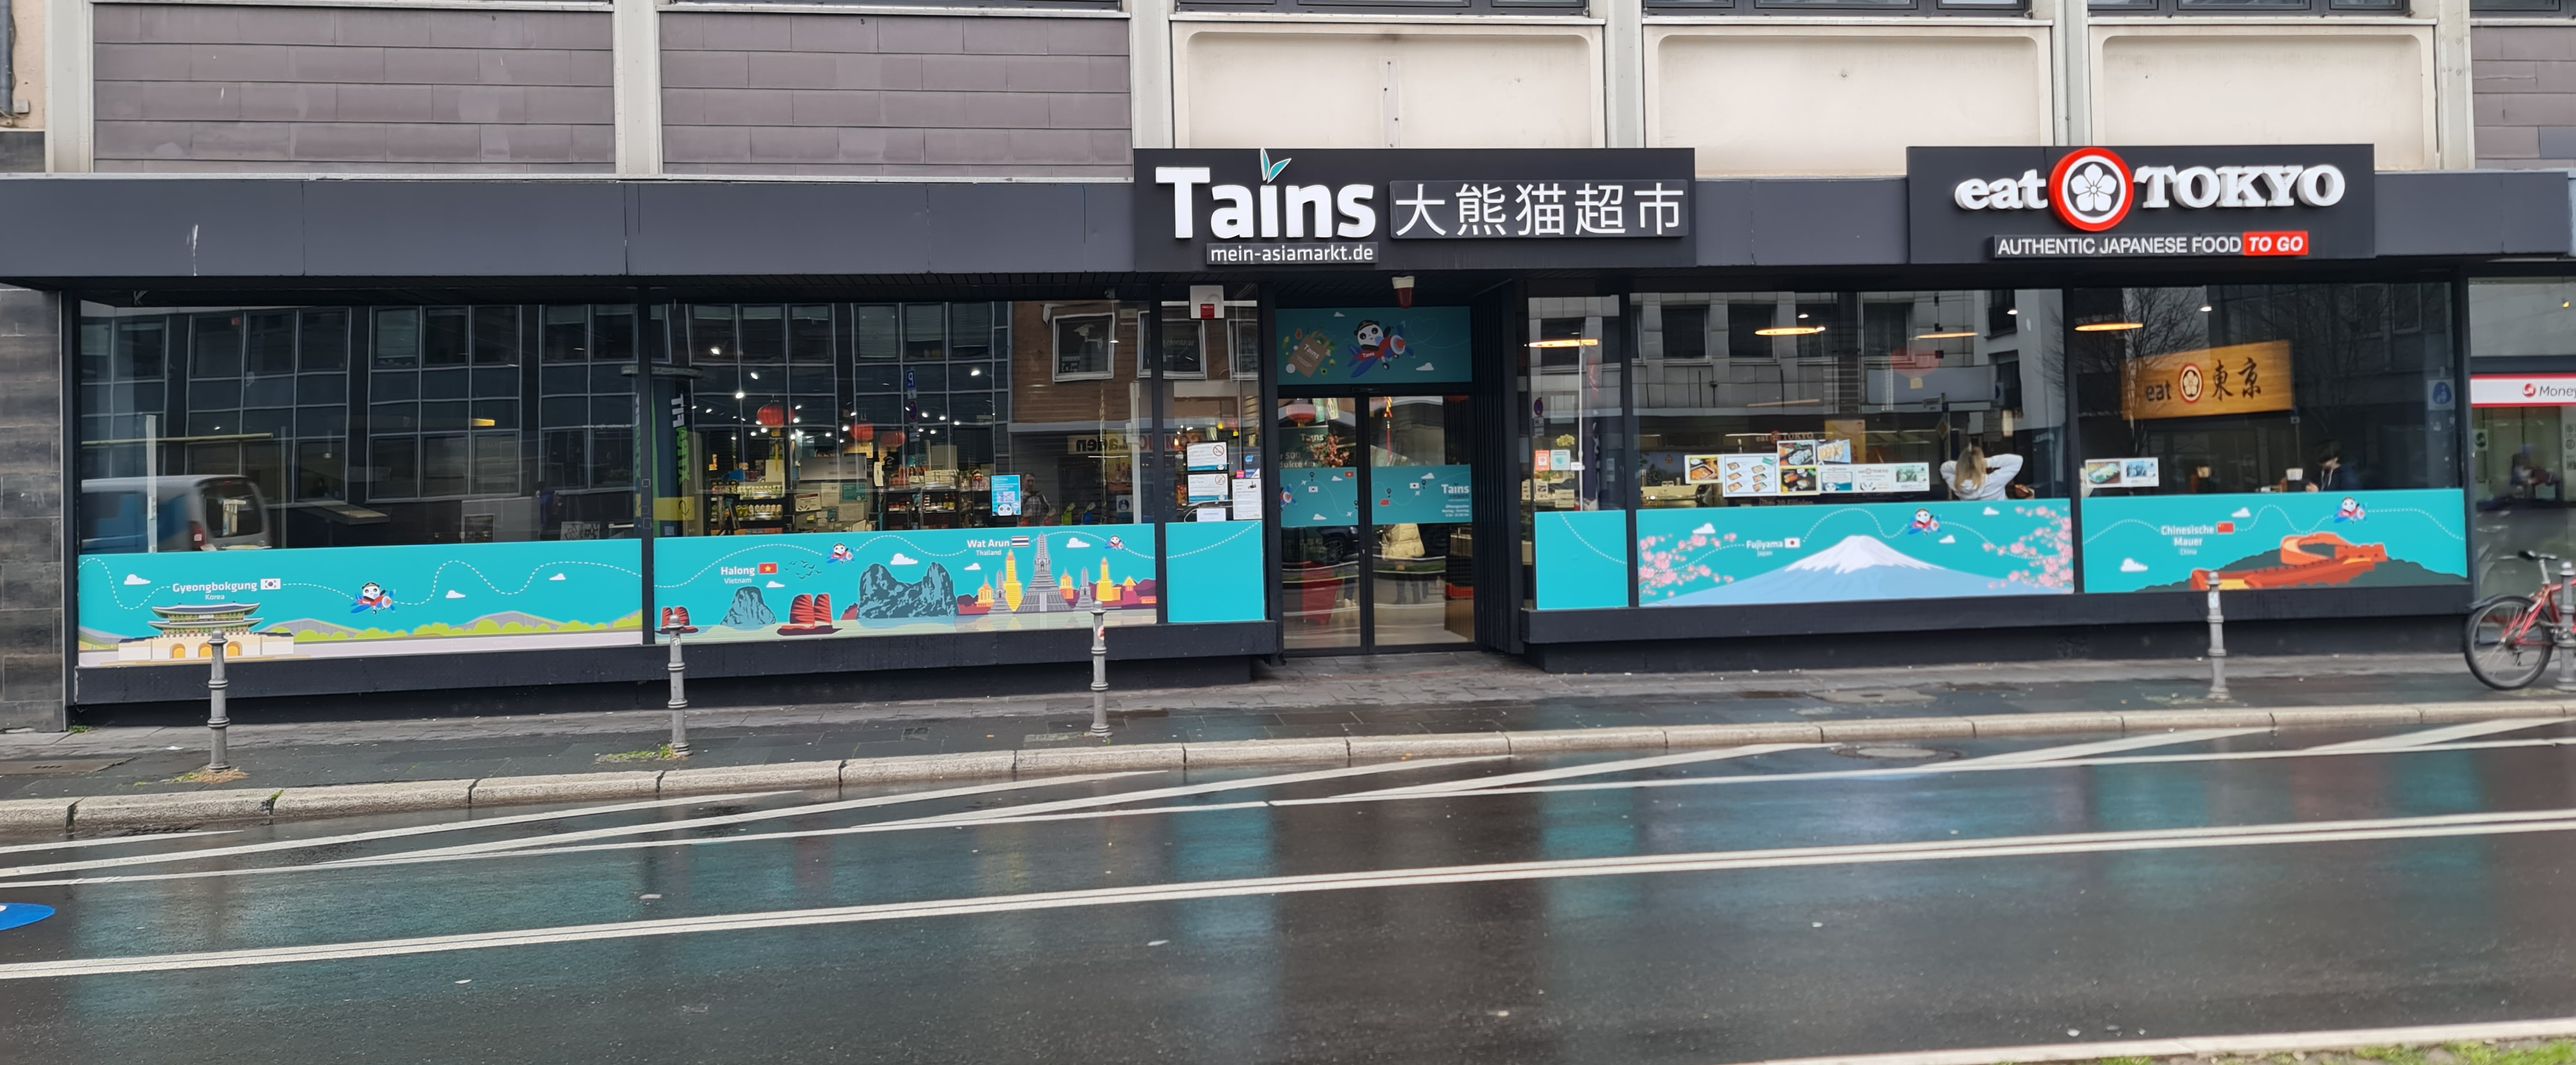 Titelbild des Unternehmens: Tains in Bonn